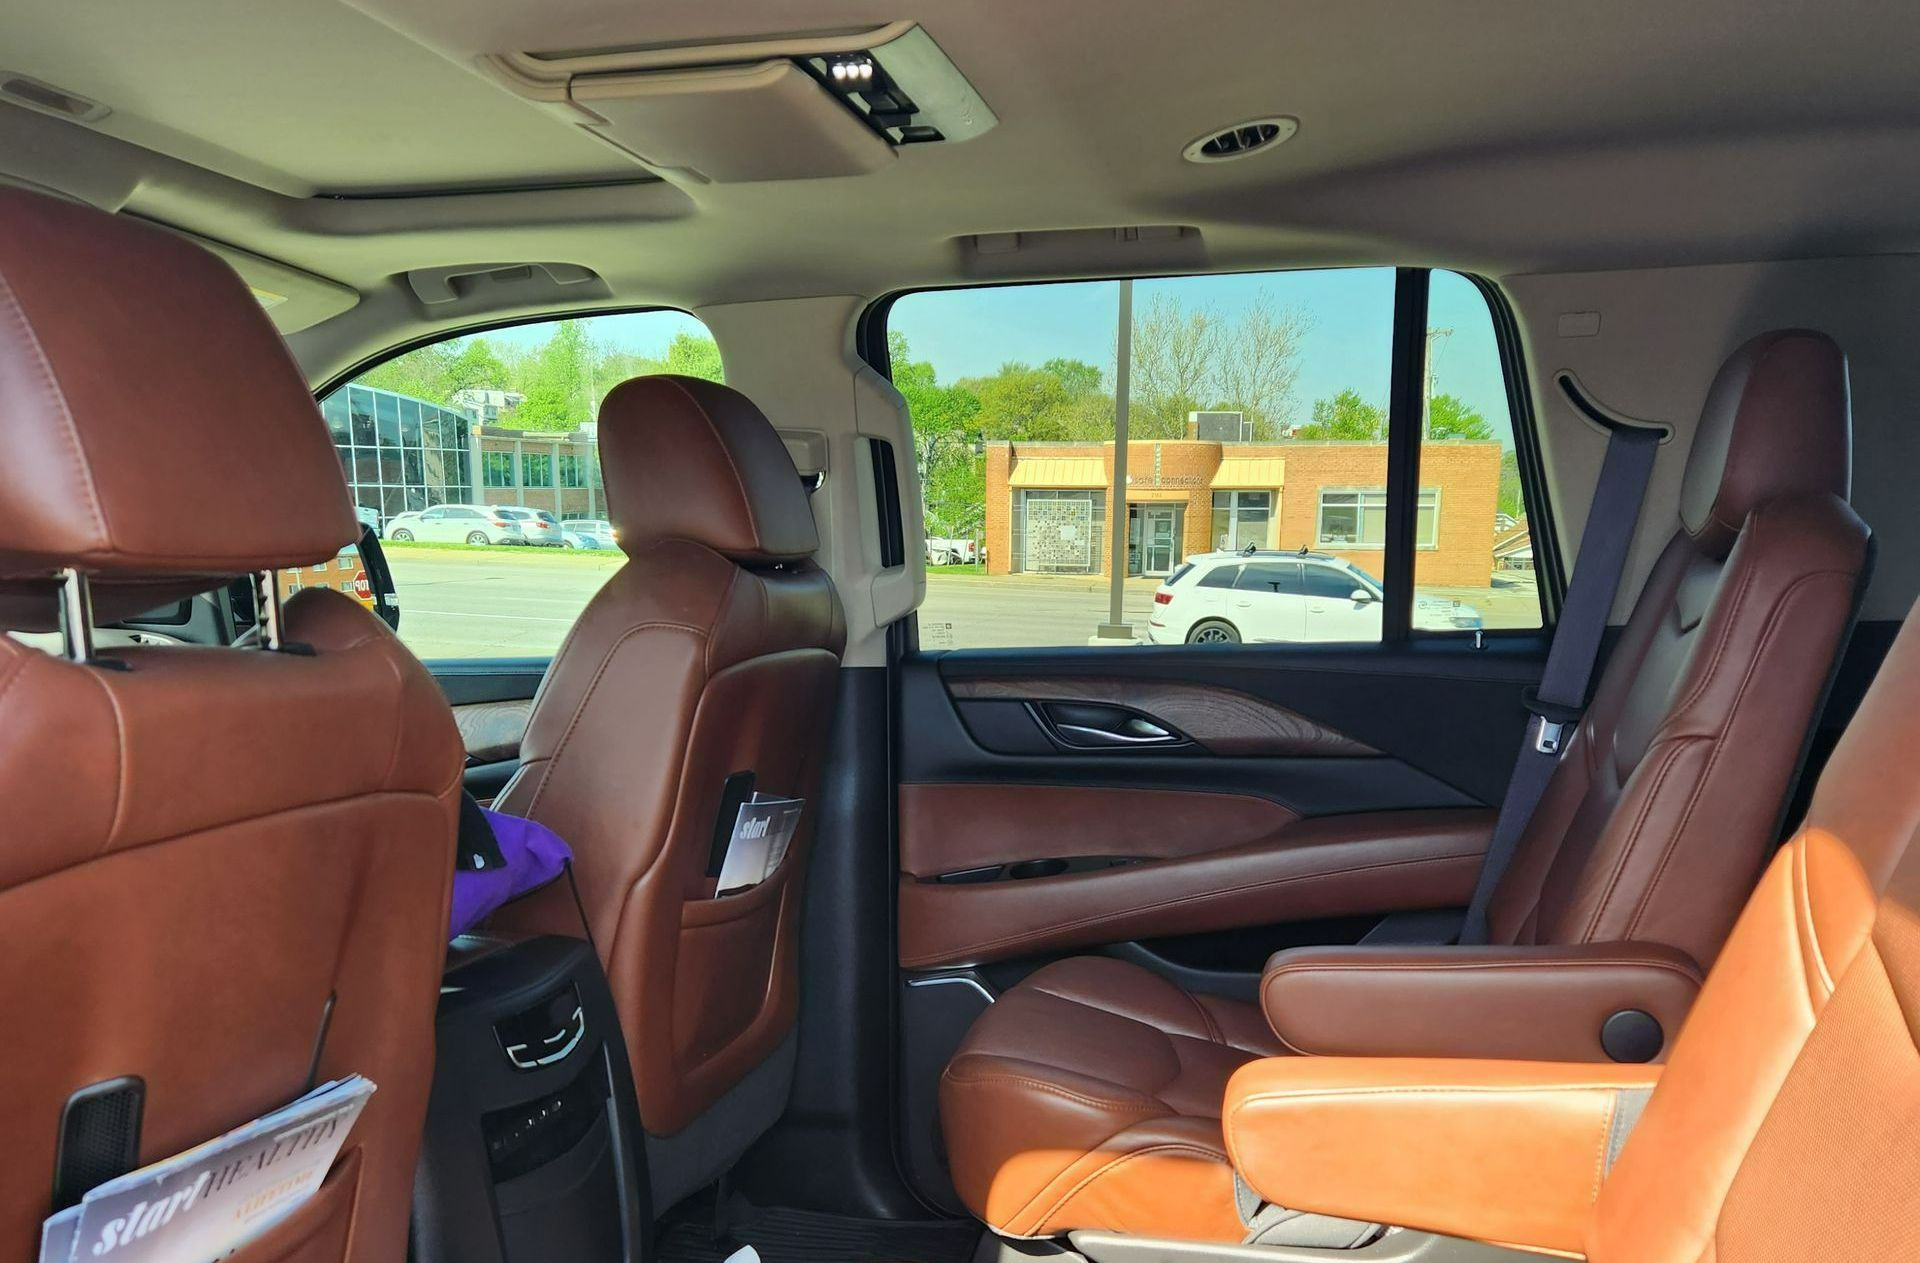 Concierges Black 2017 Escalade SUV interior side view